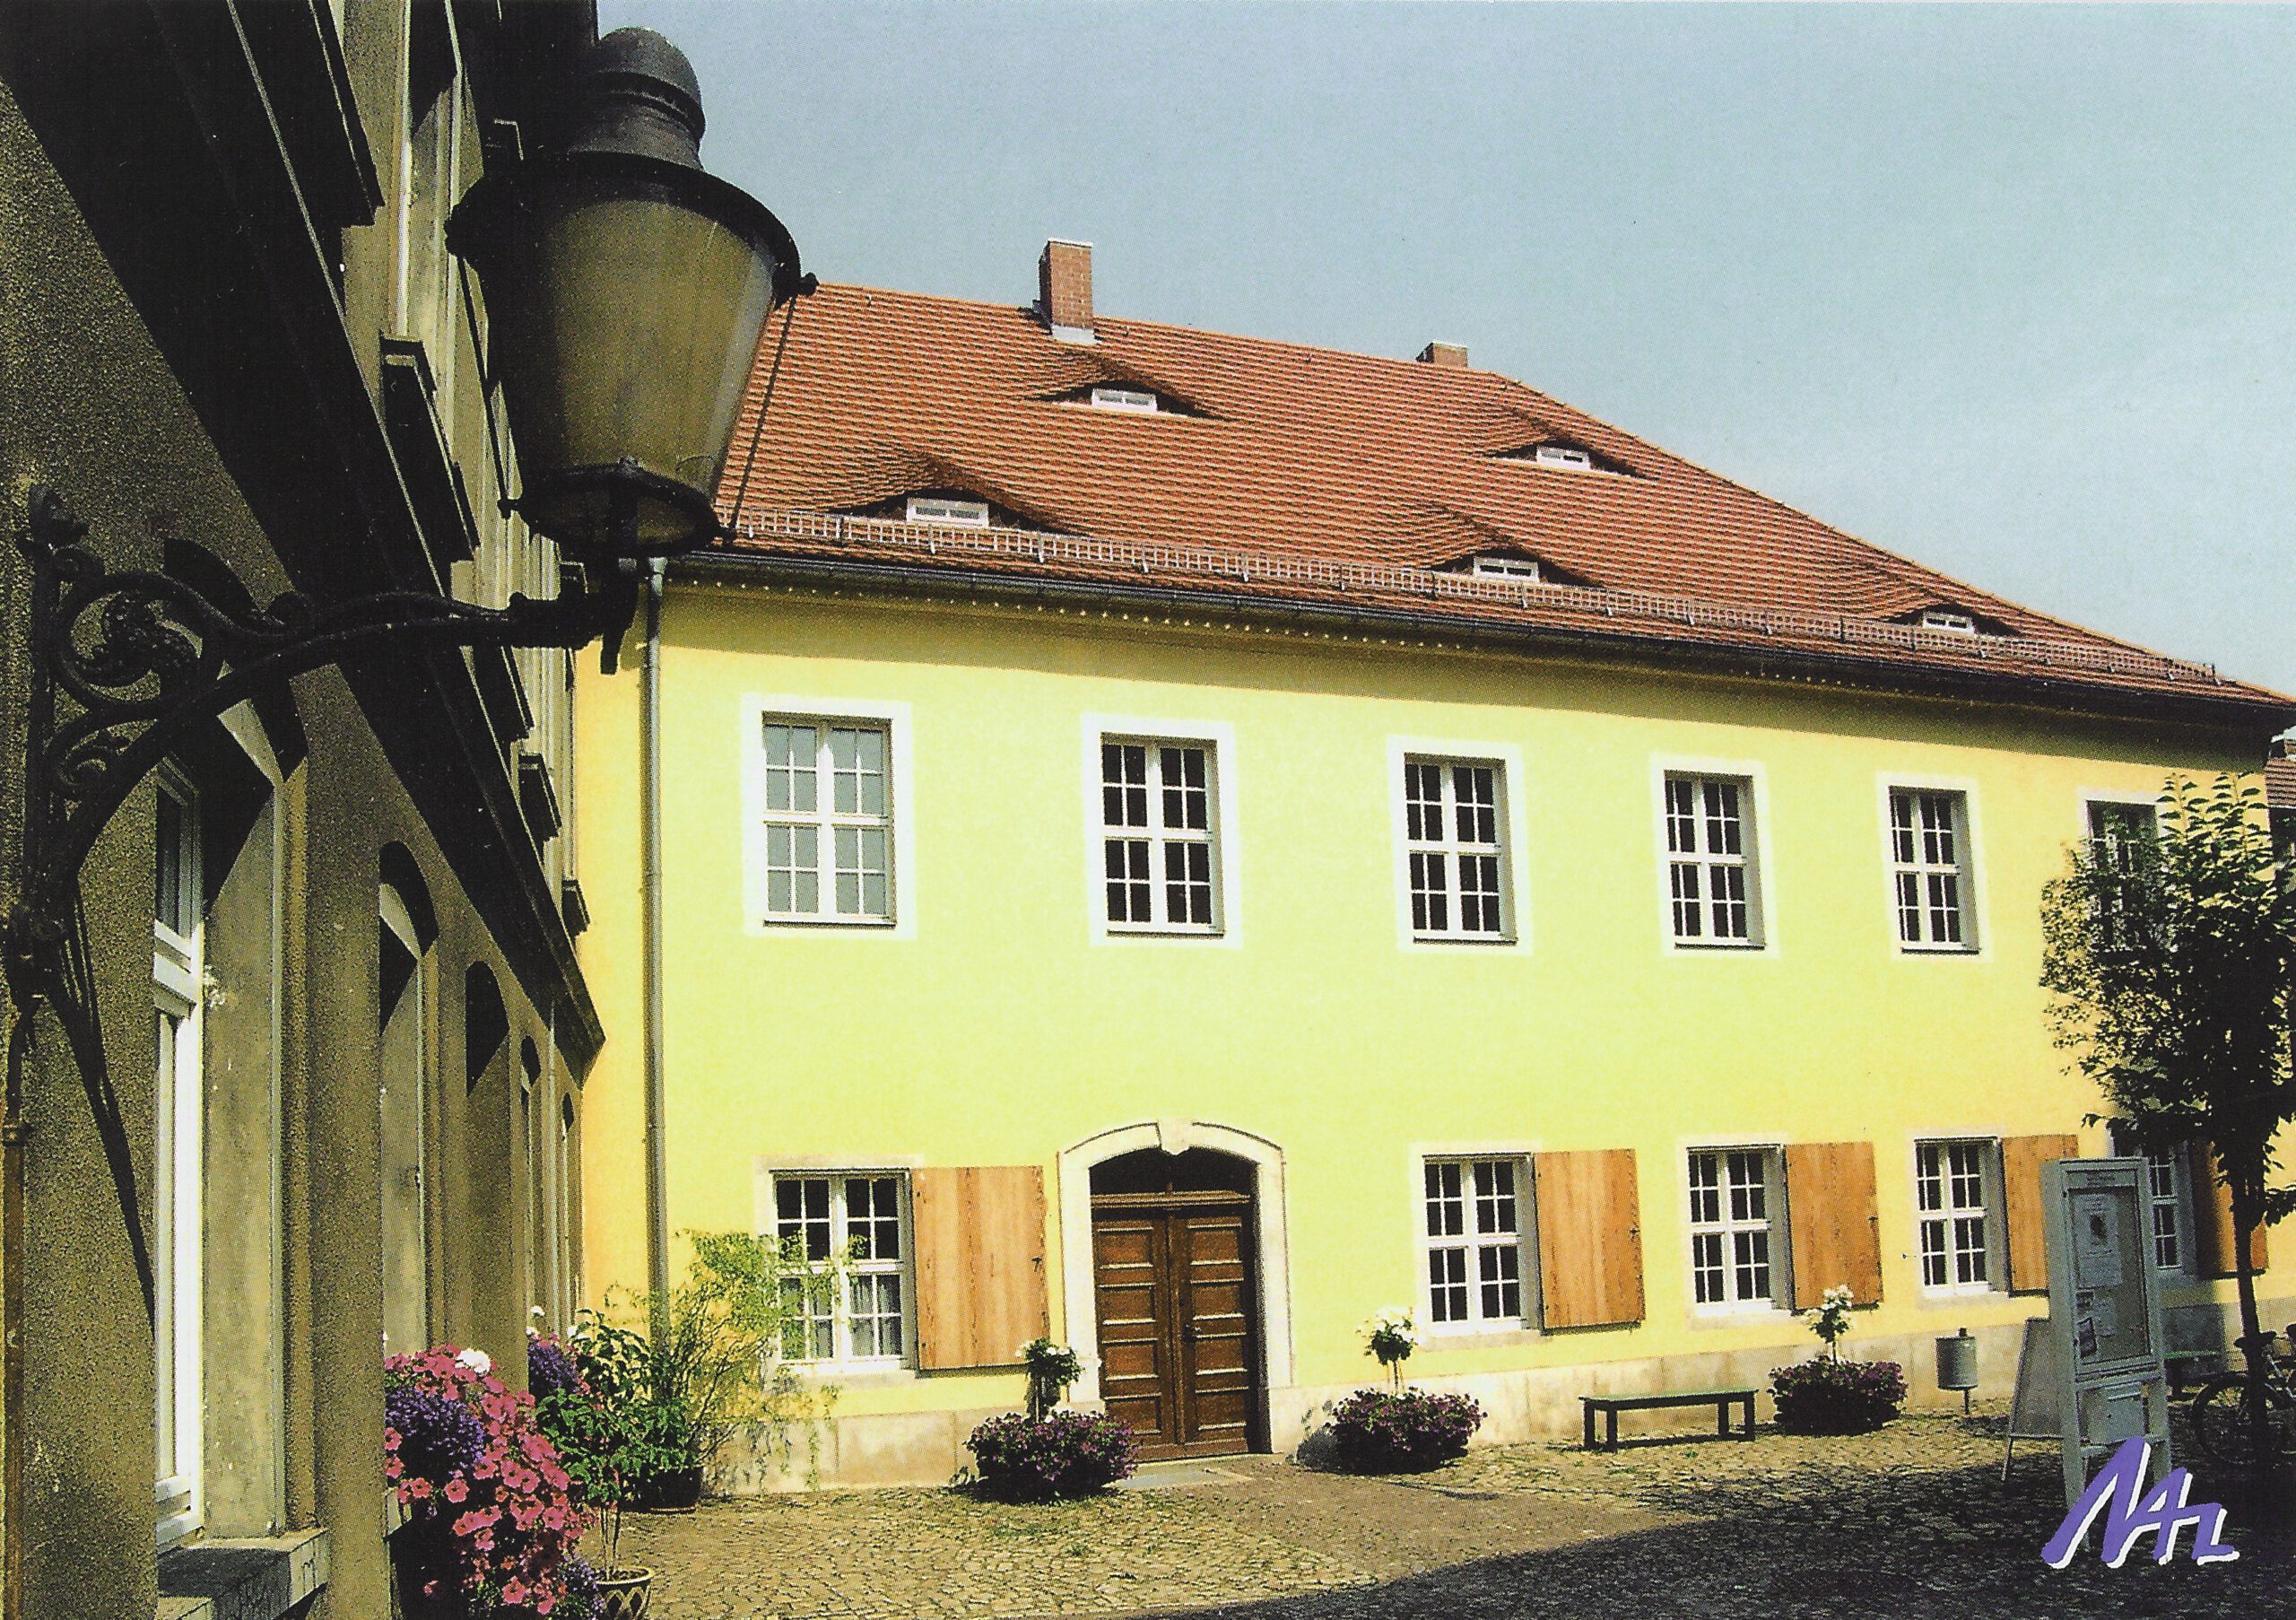 Landkreis Großenhain - Die alte Latainschule beherbergt heute das städische Museum